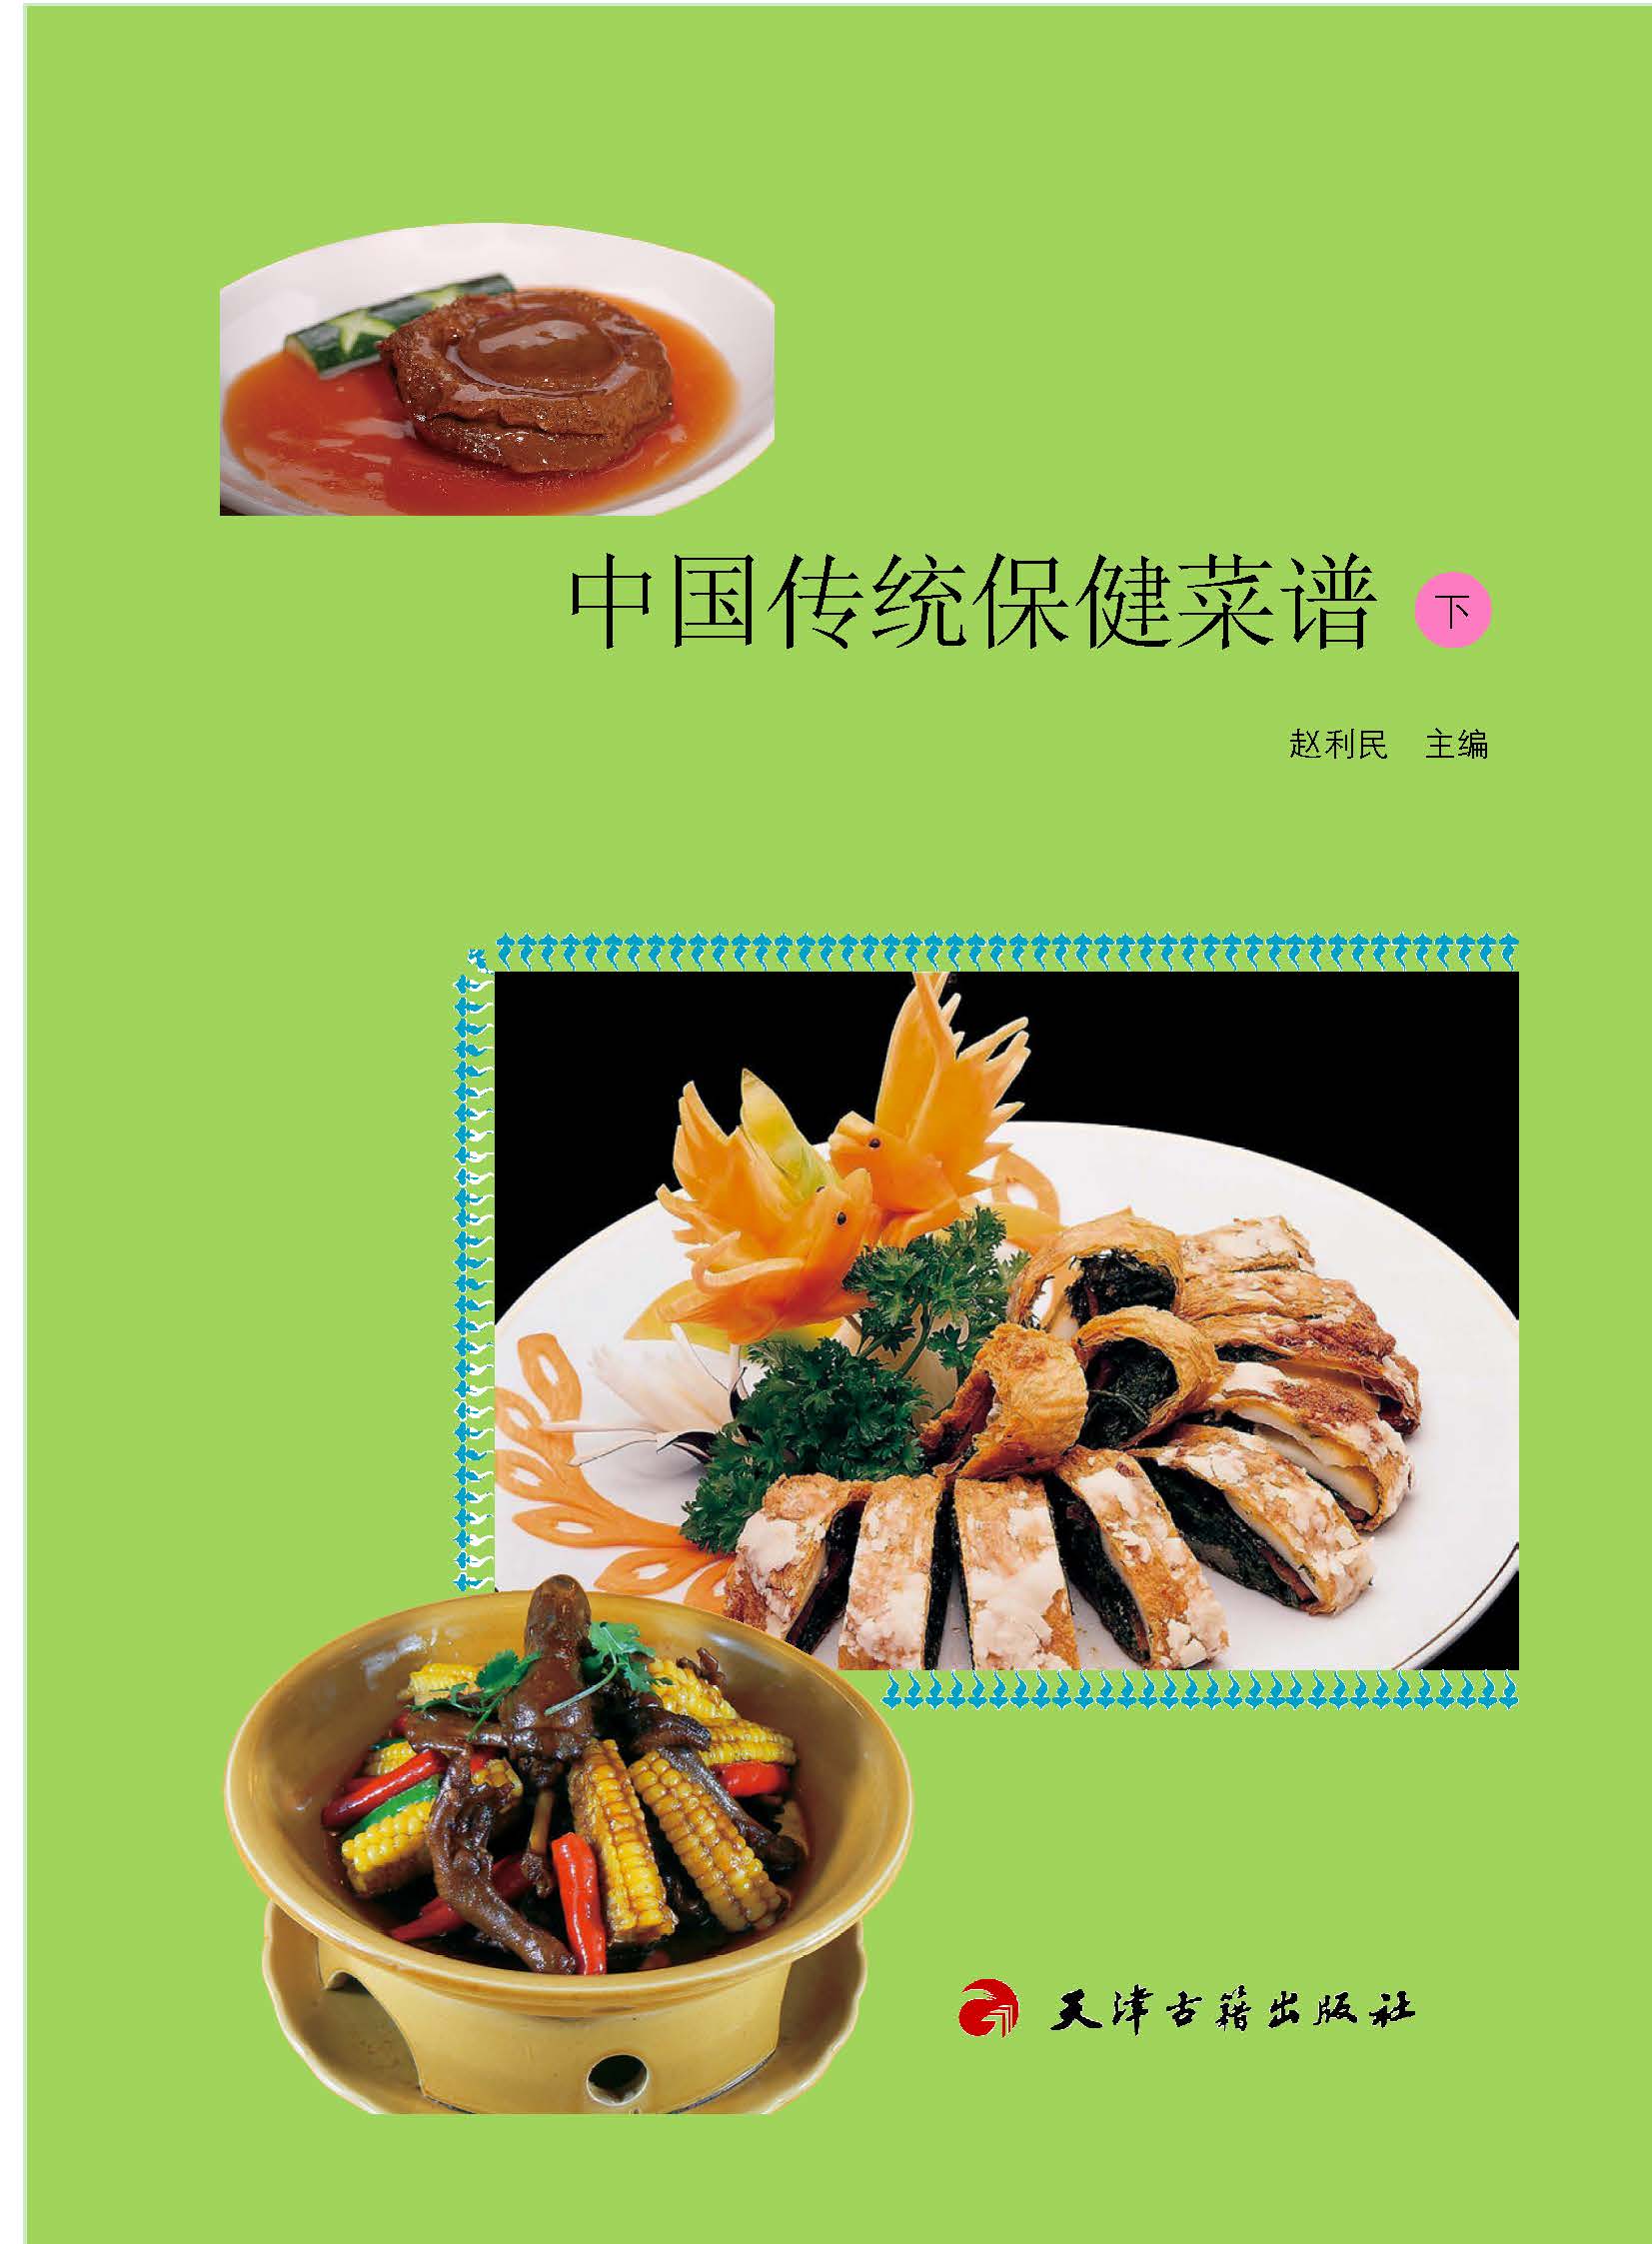 中国传统保健菜谱